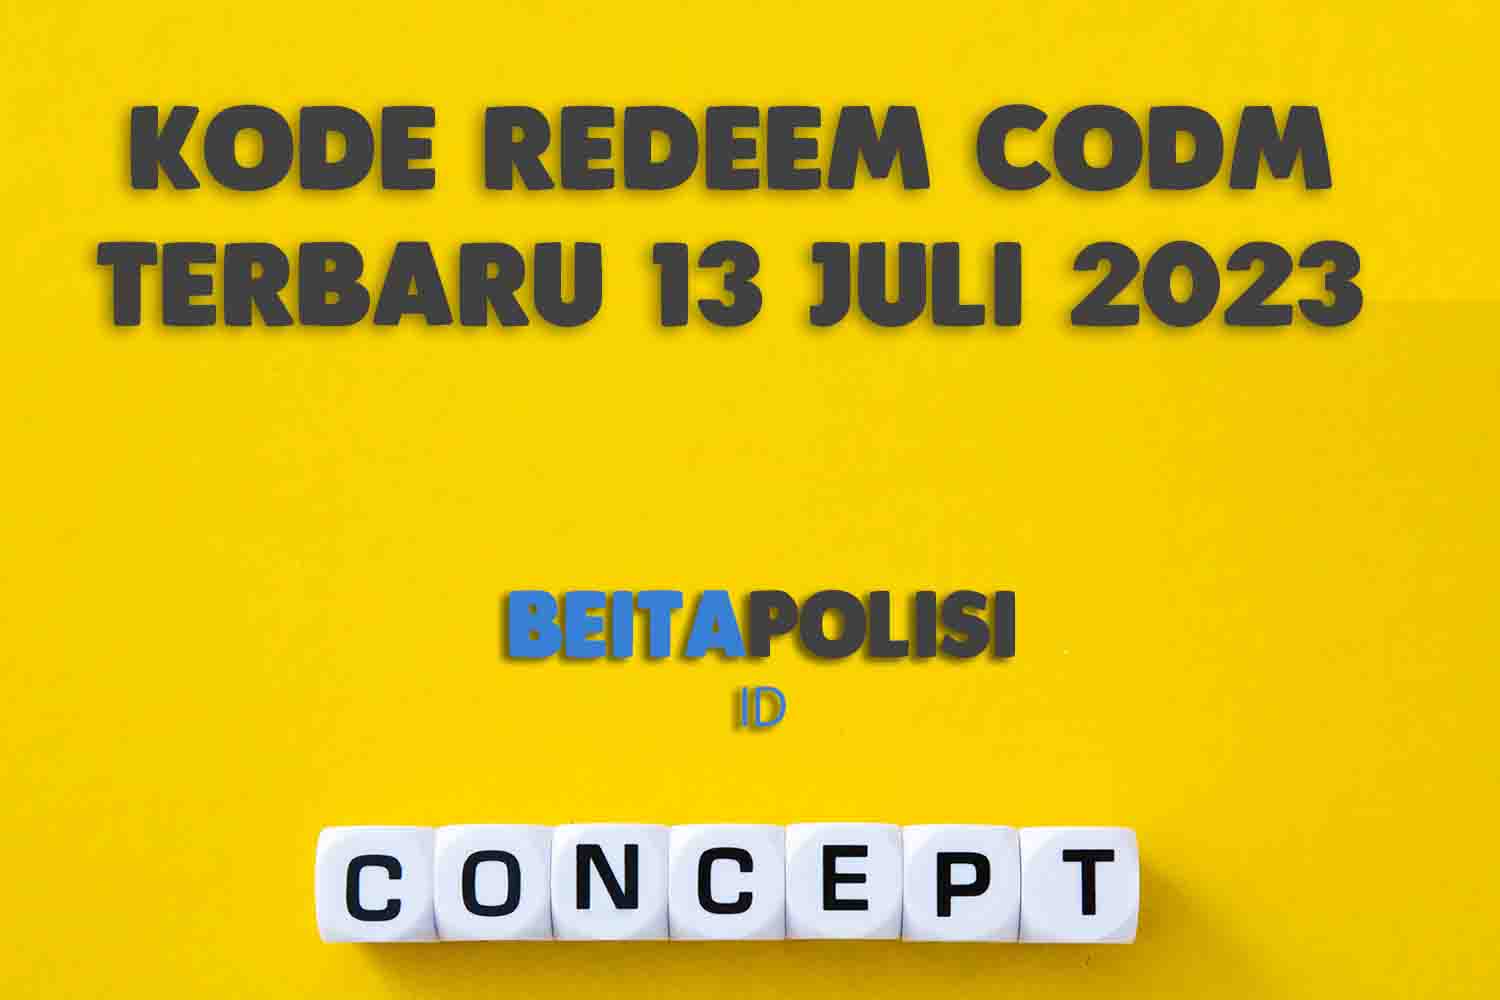 Kode Redeem Codm Terbaru 13 Juli 2023